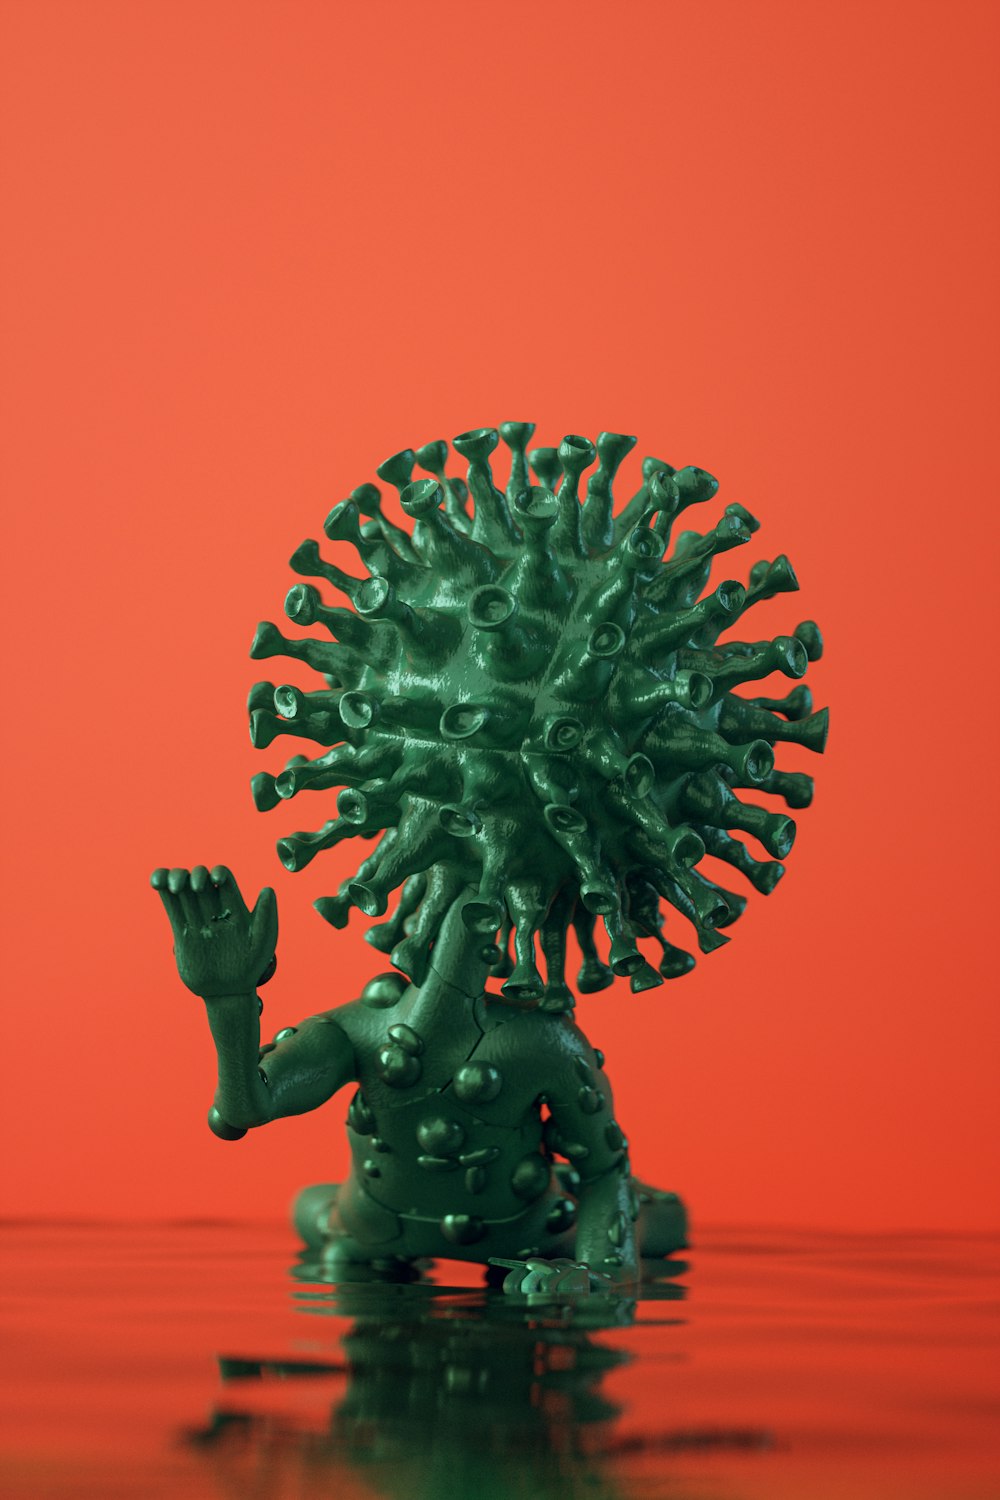 Una estatua verde de una criatura con un fondo rojo